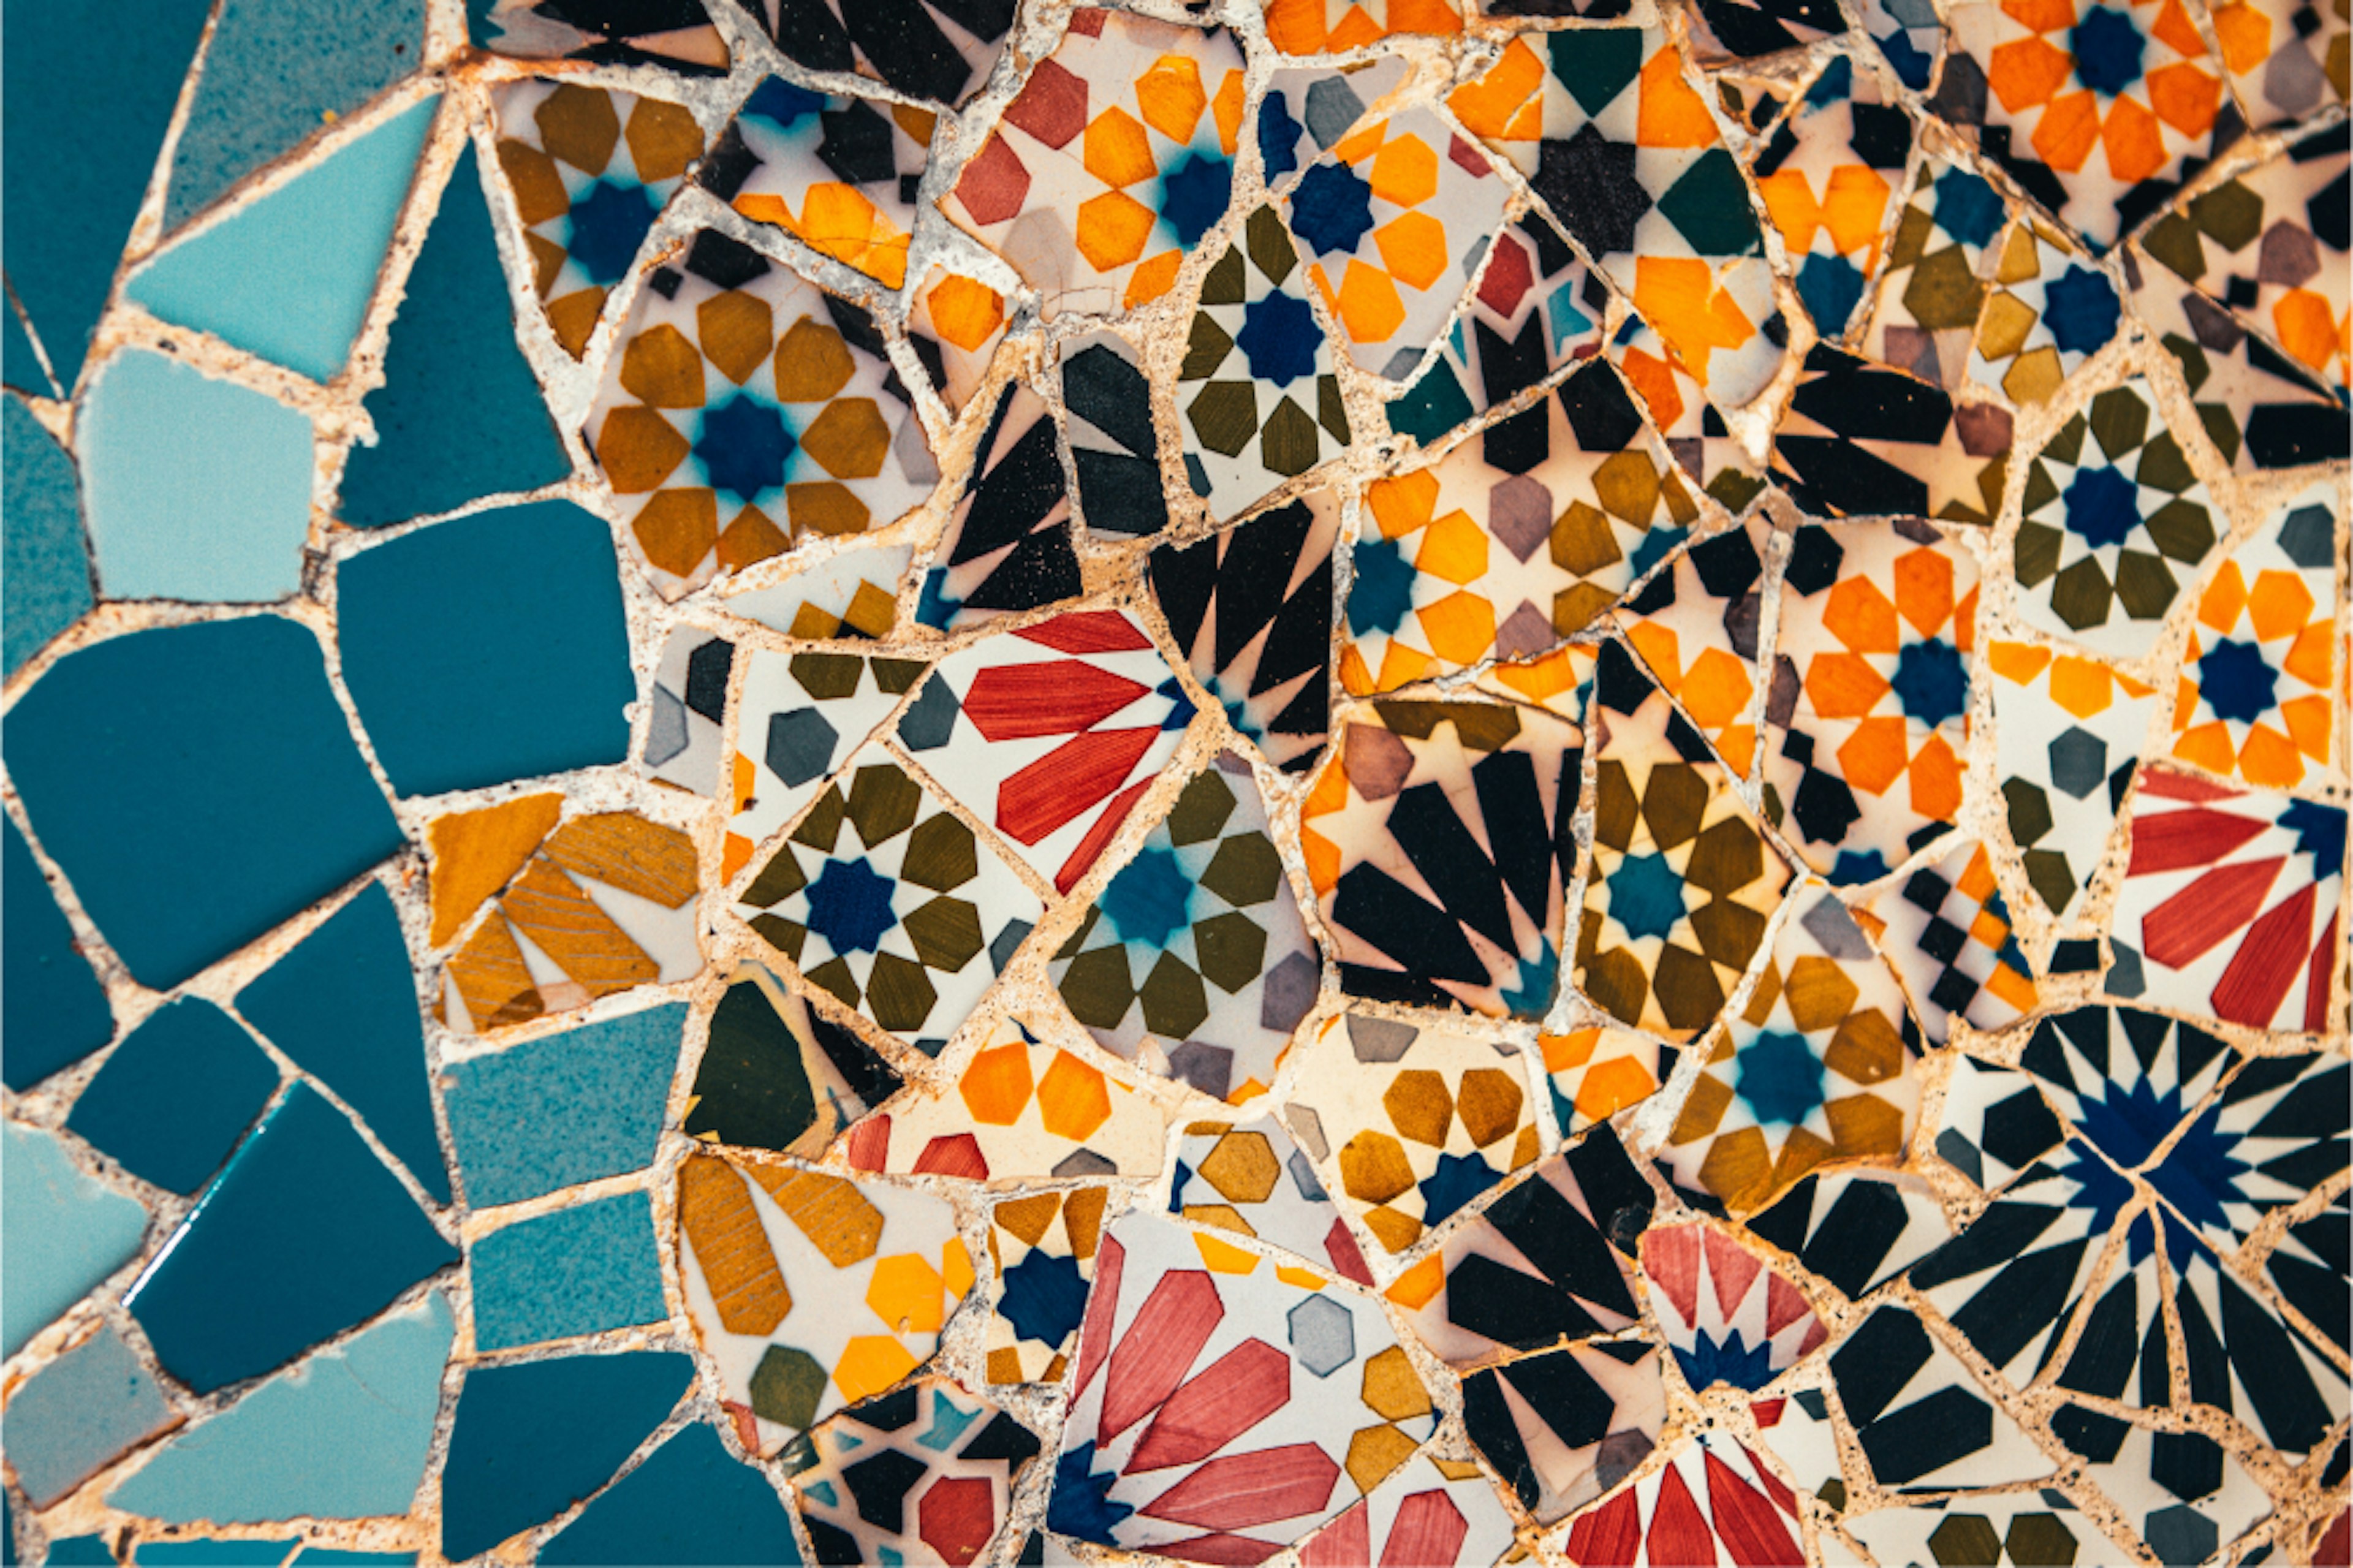 Large, colorful mosaic.